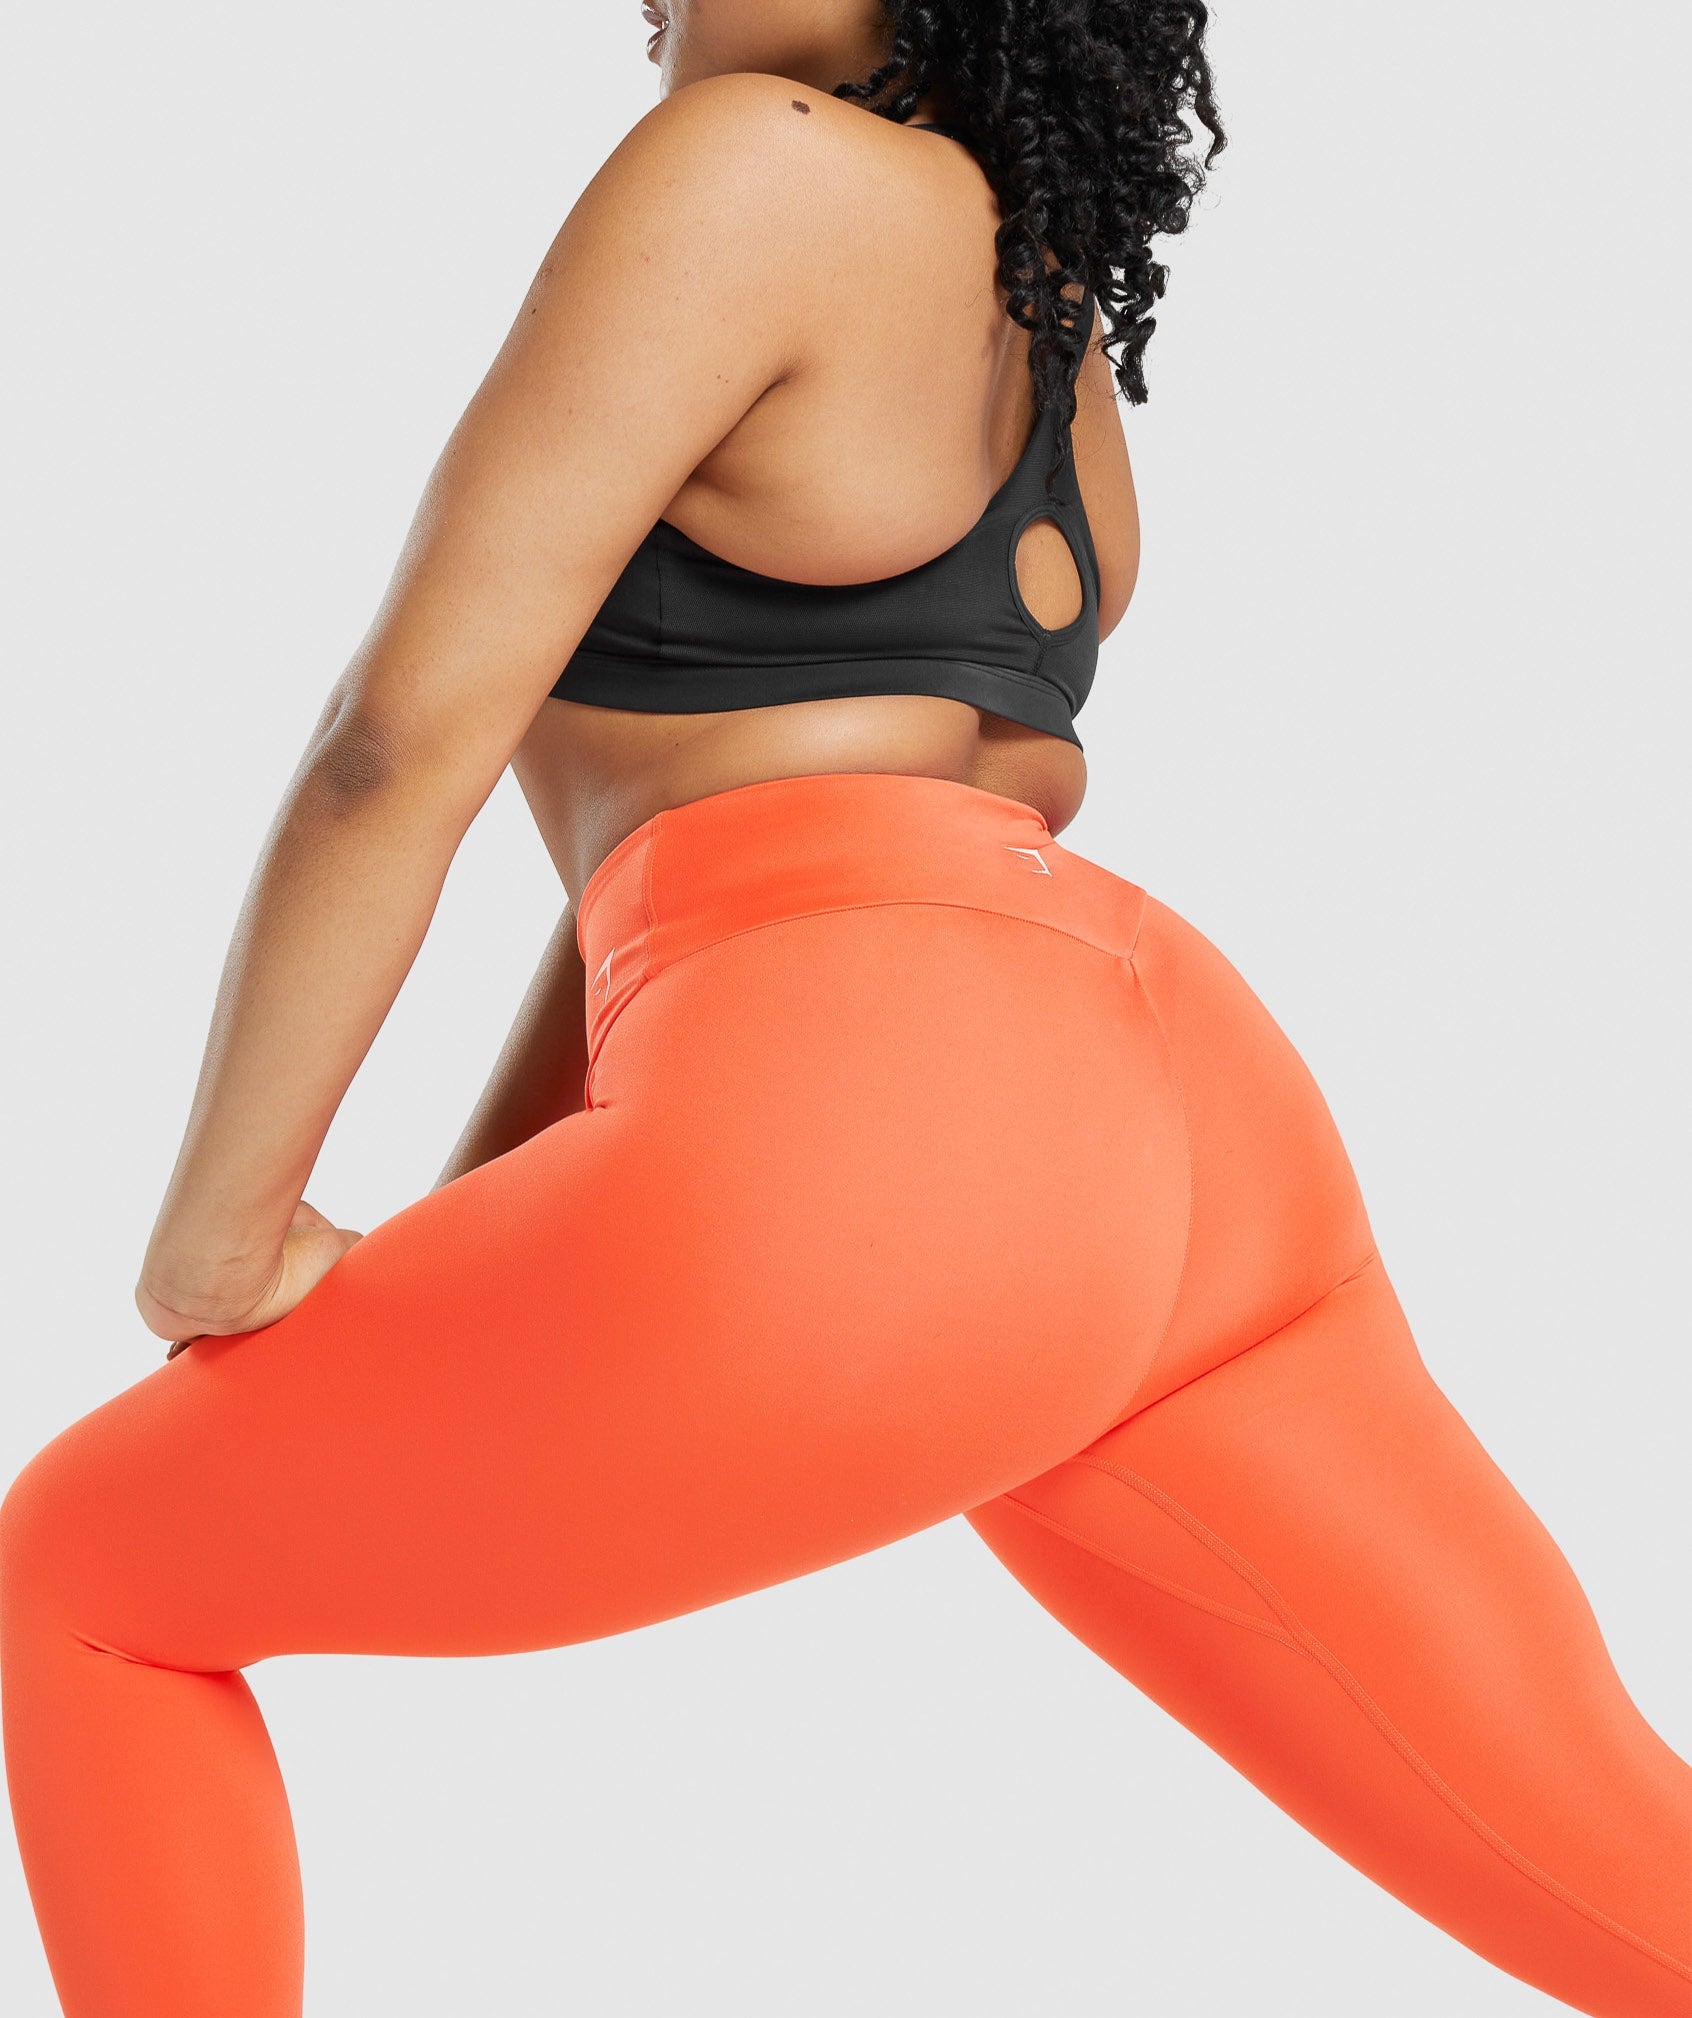 Gymshark Training 7/8 Leggings - Orange  Orange leggings, High waisted leggings  workout, Active wear leggings